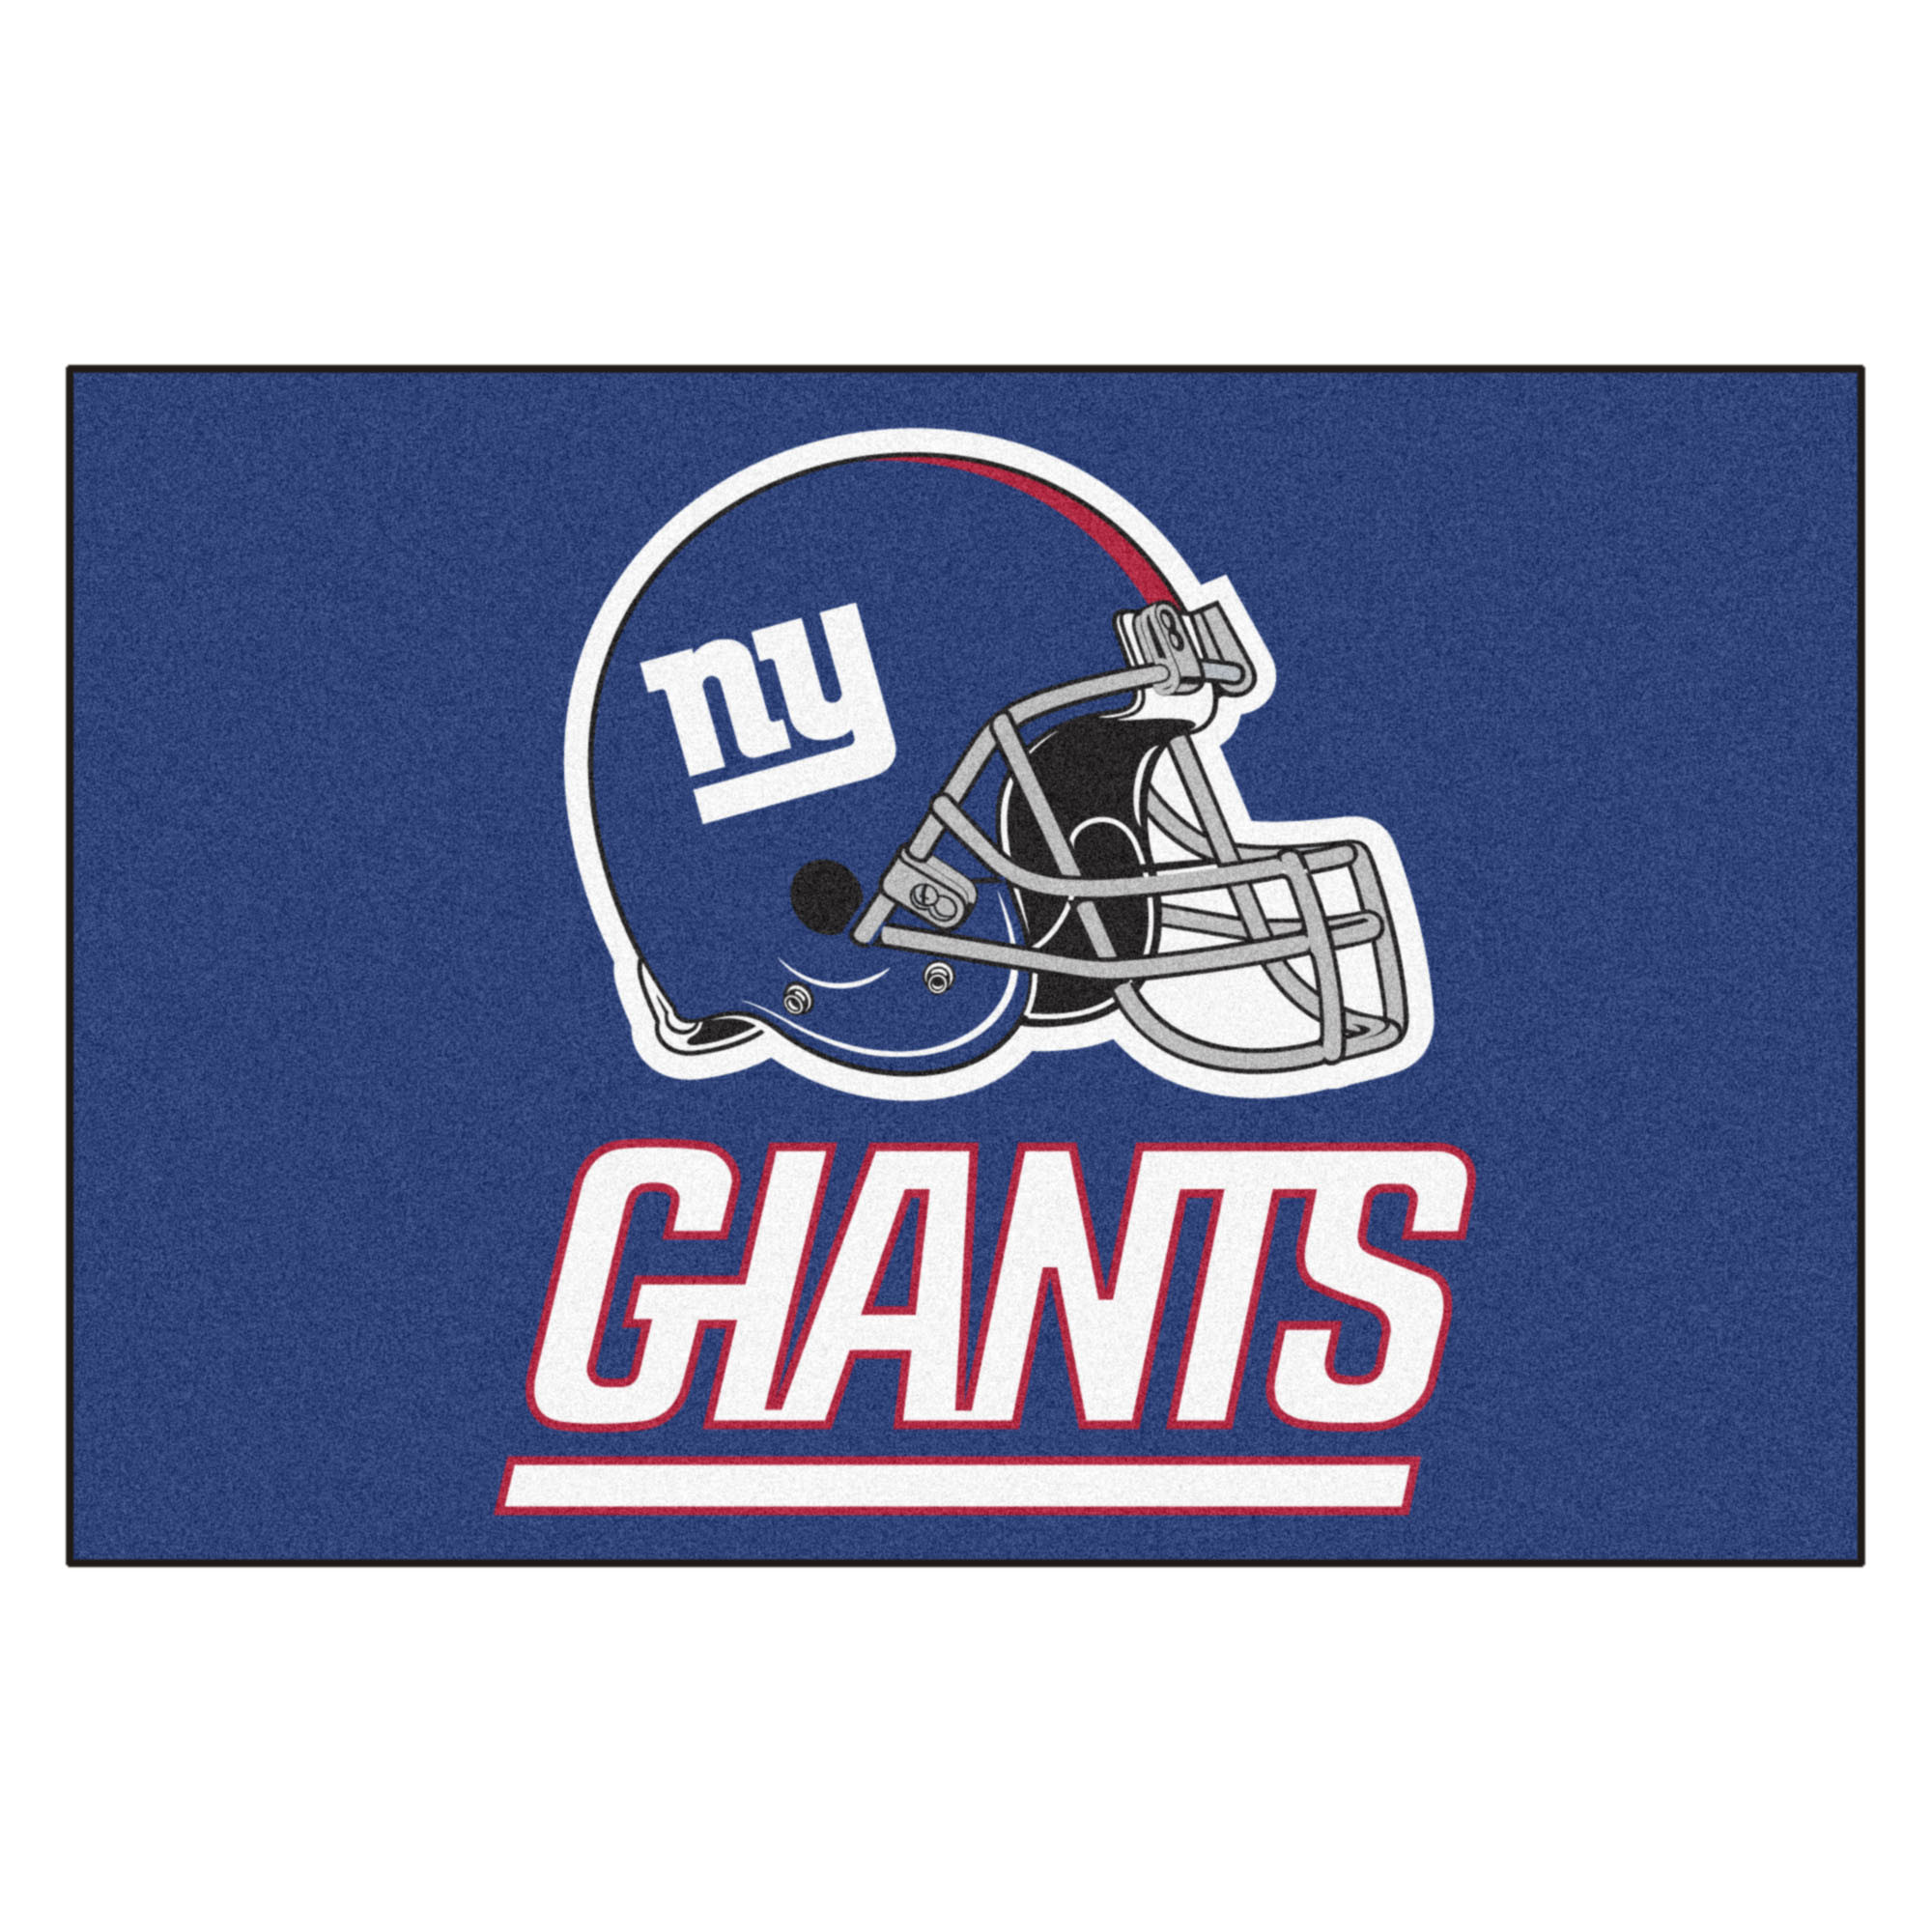 2000x2000 New York Giants Wallpaper 2018 Great New York Giants All Star Door Mat